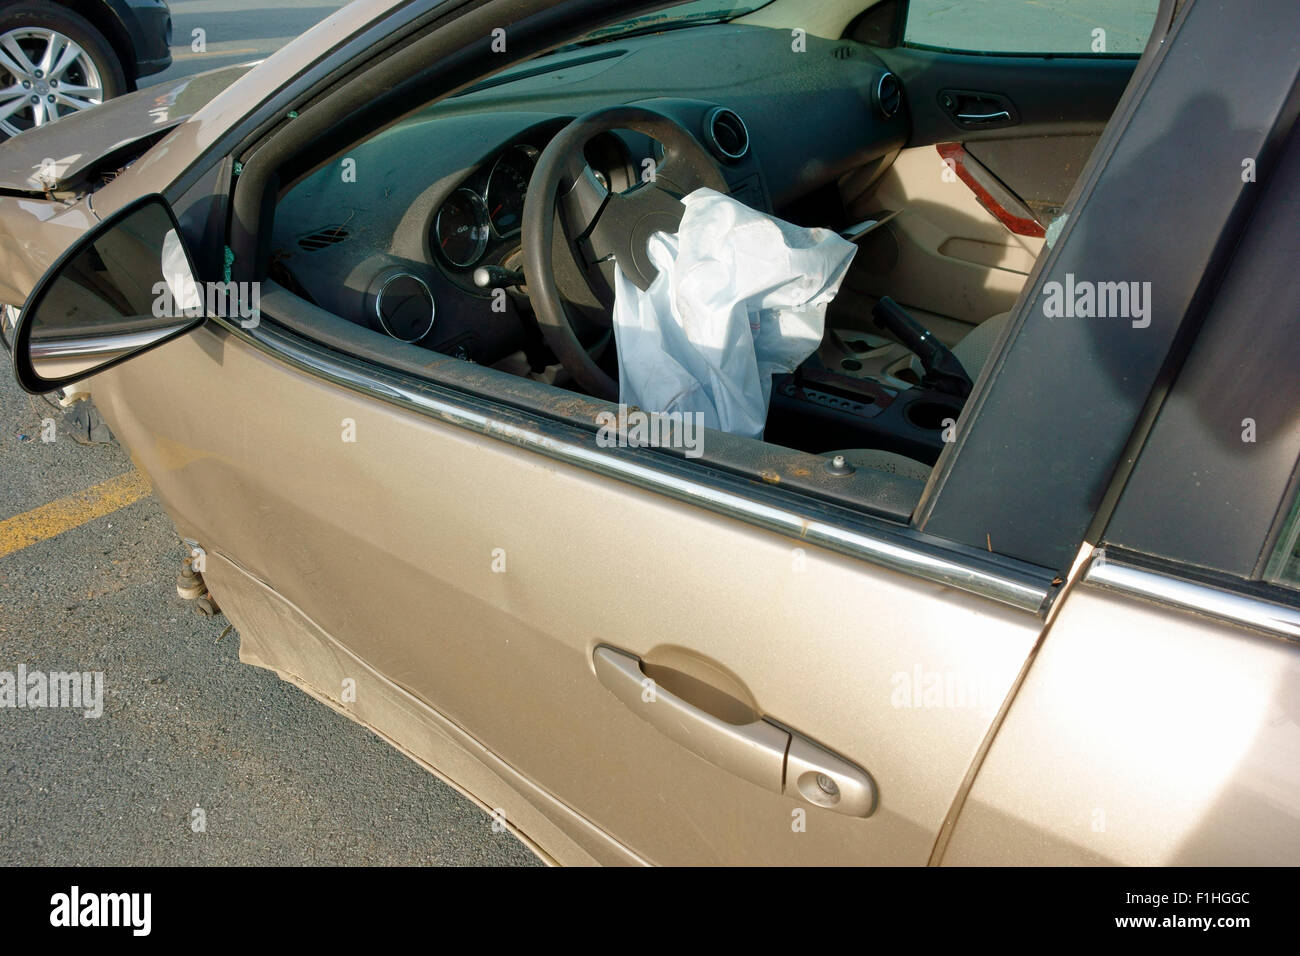 Einem Fahrzeug Autobahn Autounfall zeigt der Fahrer am Lenkrad Seitenairbag, die aktiviert oder aufgeblasen Stockfoto